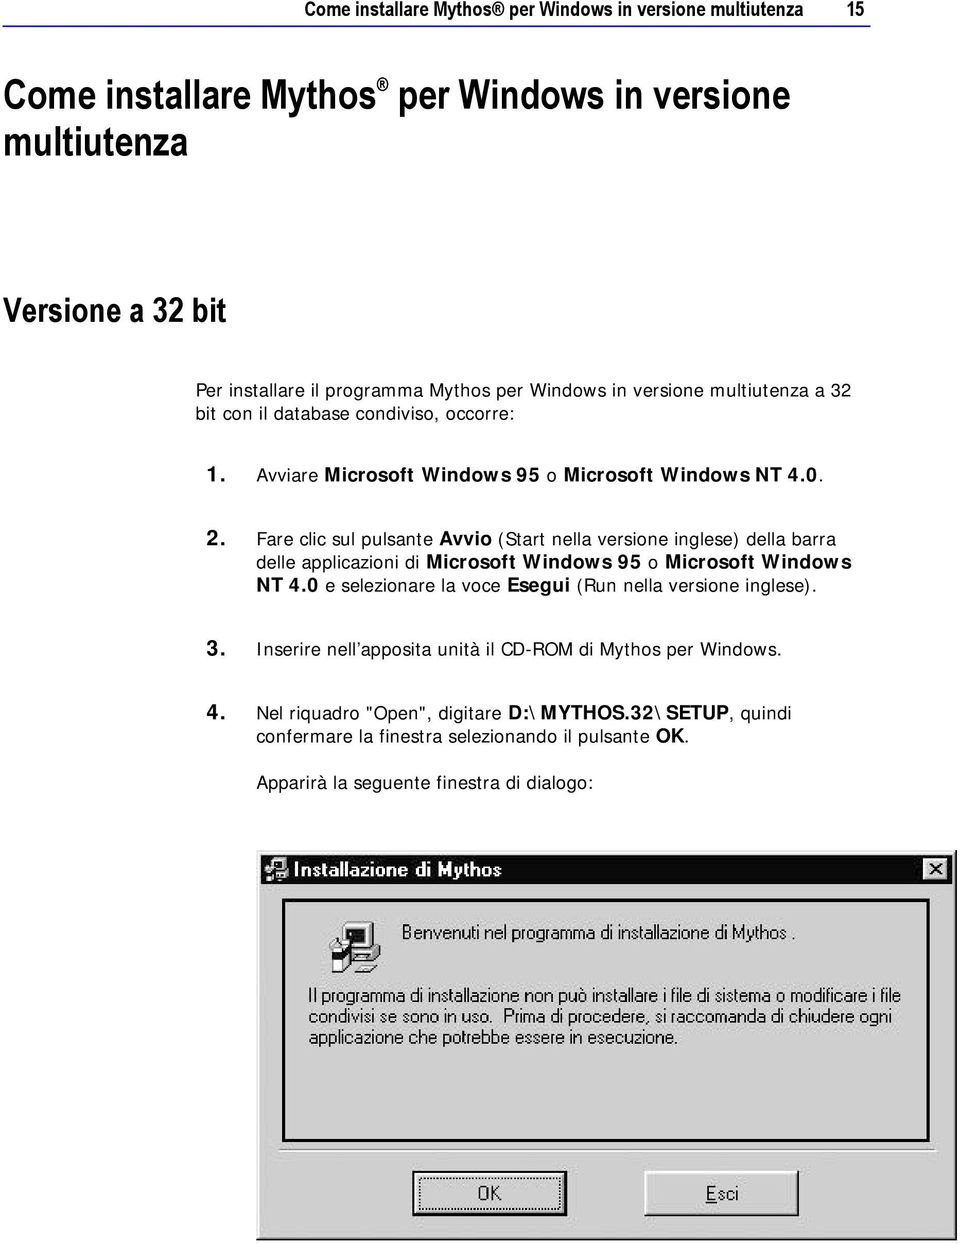 Fare clic sul pulsante Avvio (Start nella versione inglese) della barra delle applicazioni di Microsoft Windows 95 o Microsoft Windows NT 4.